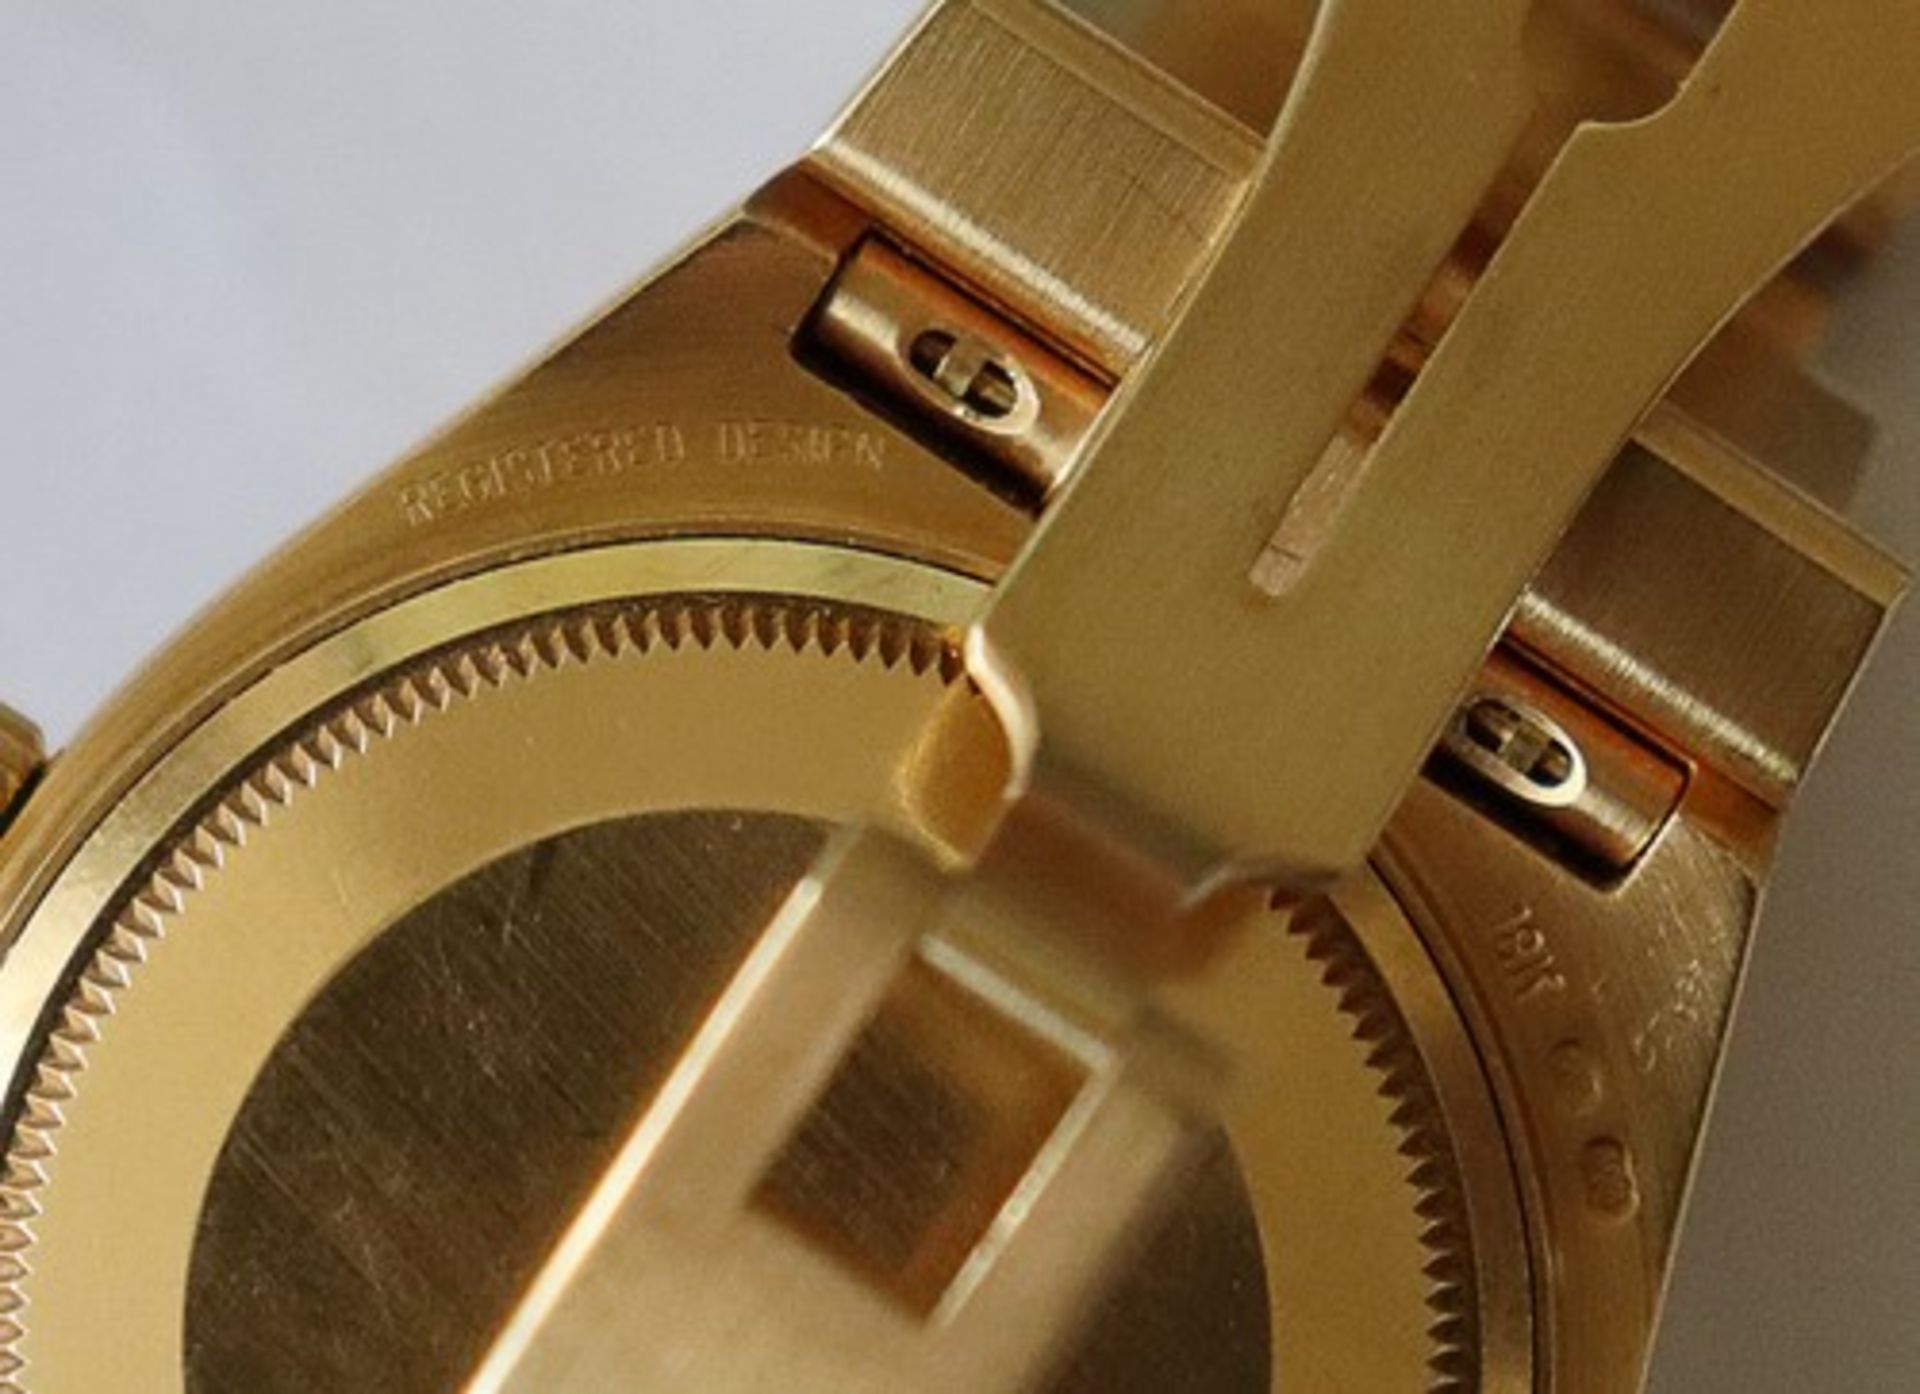 Rolex - HerrenarmbanduhrSchweiz, GG 750, Chronometer, Day Date Oysterquartz, rundes Gehäuse, Dca.3, - Bild 17 aus 17